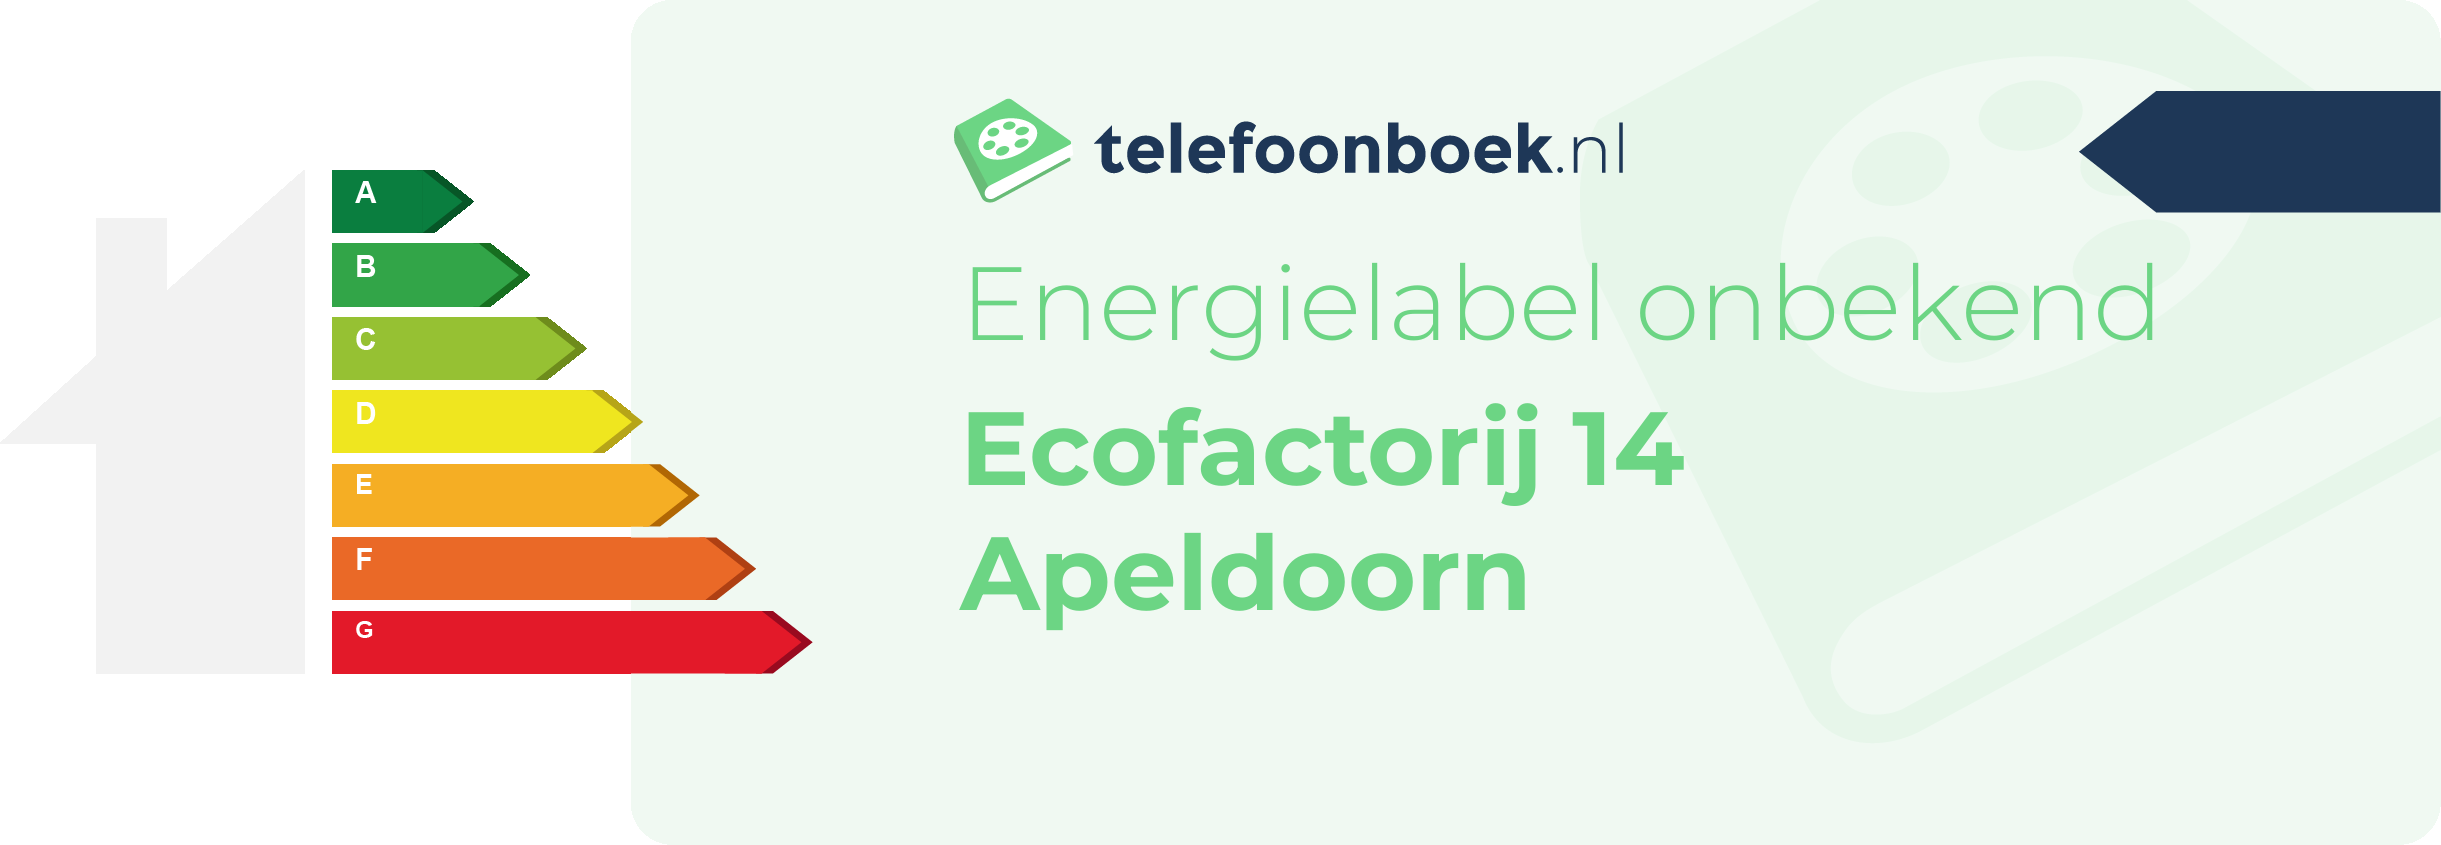 Energielabel Ecofactorij 14 Apeldoorn